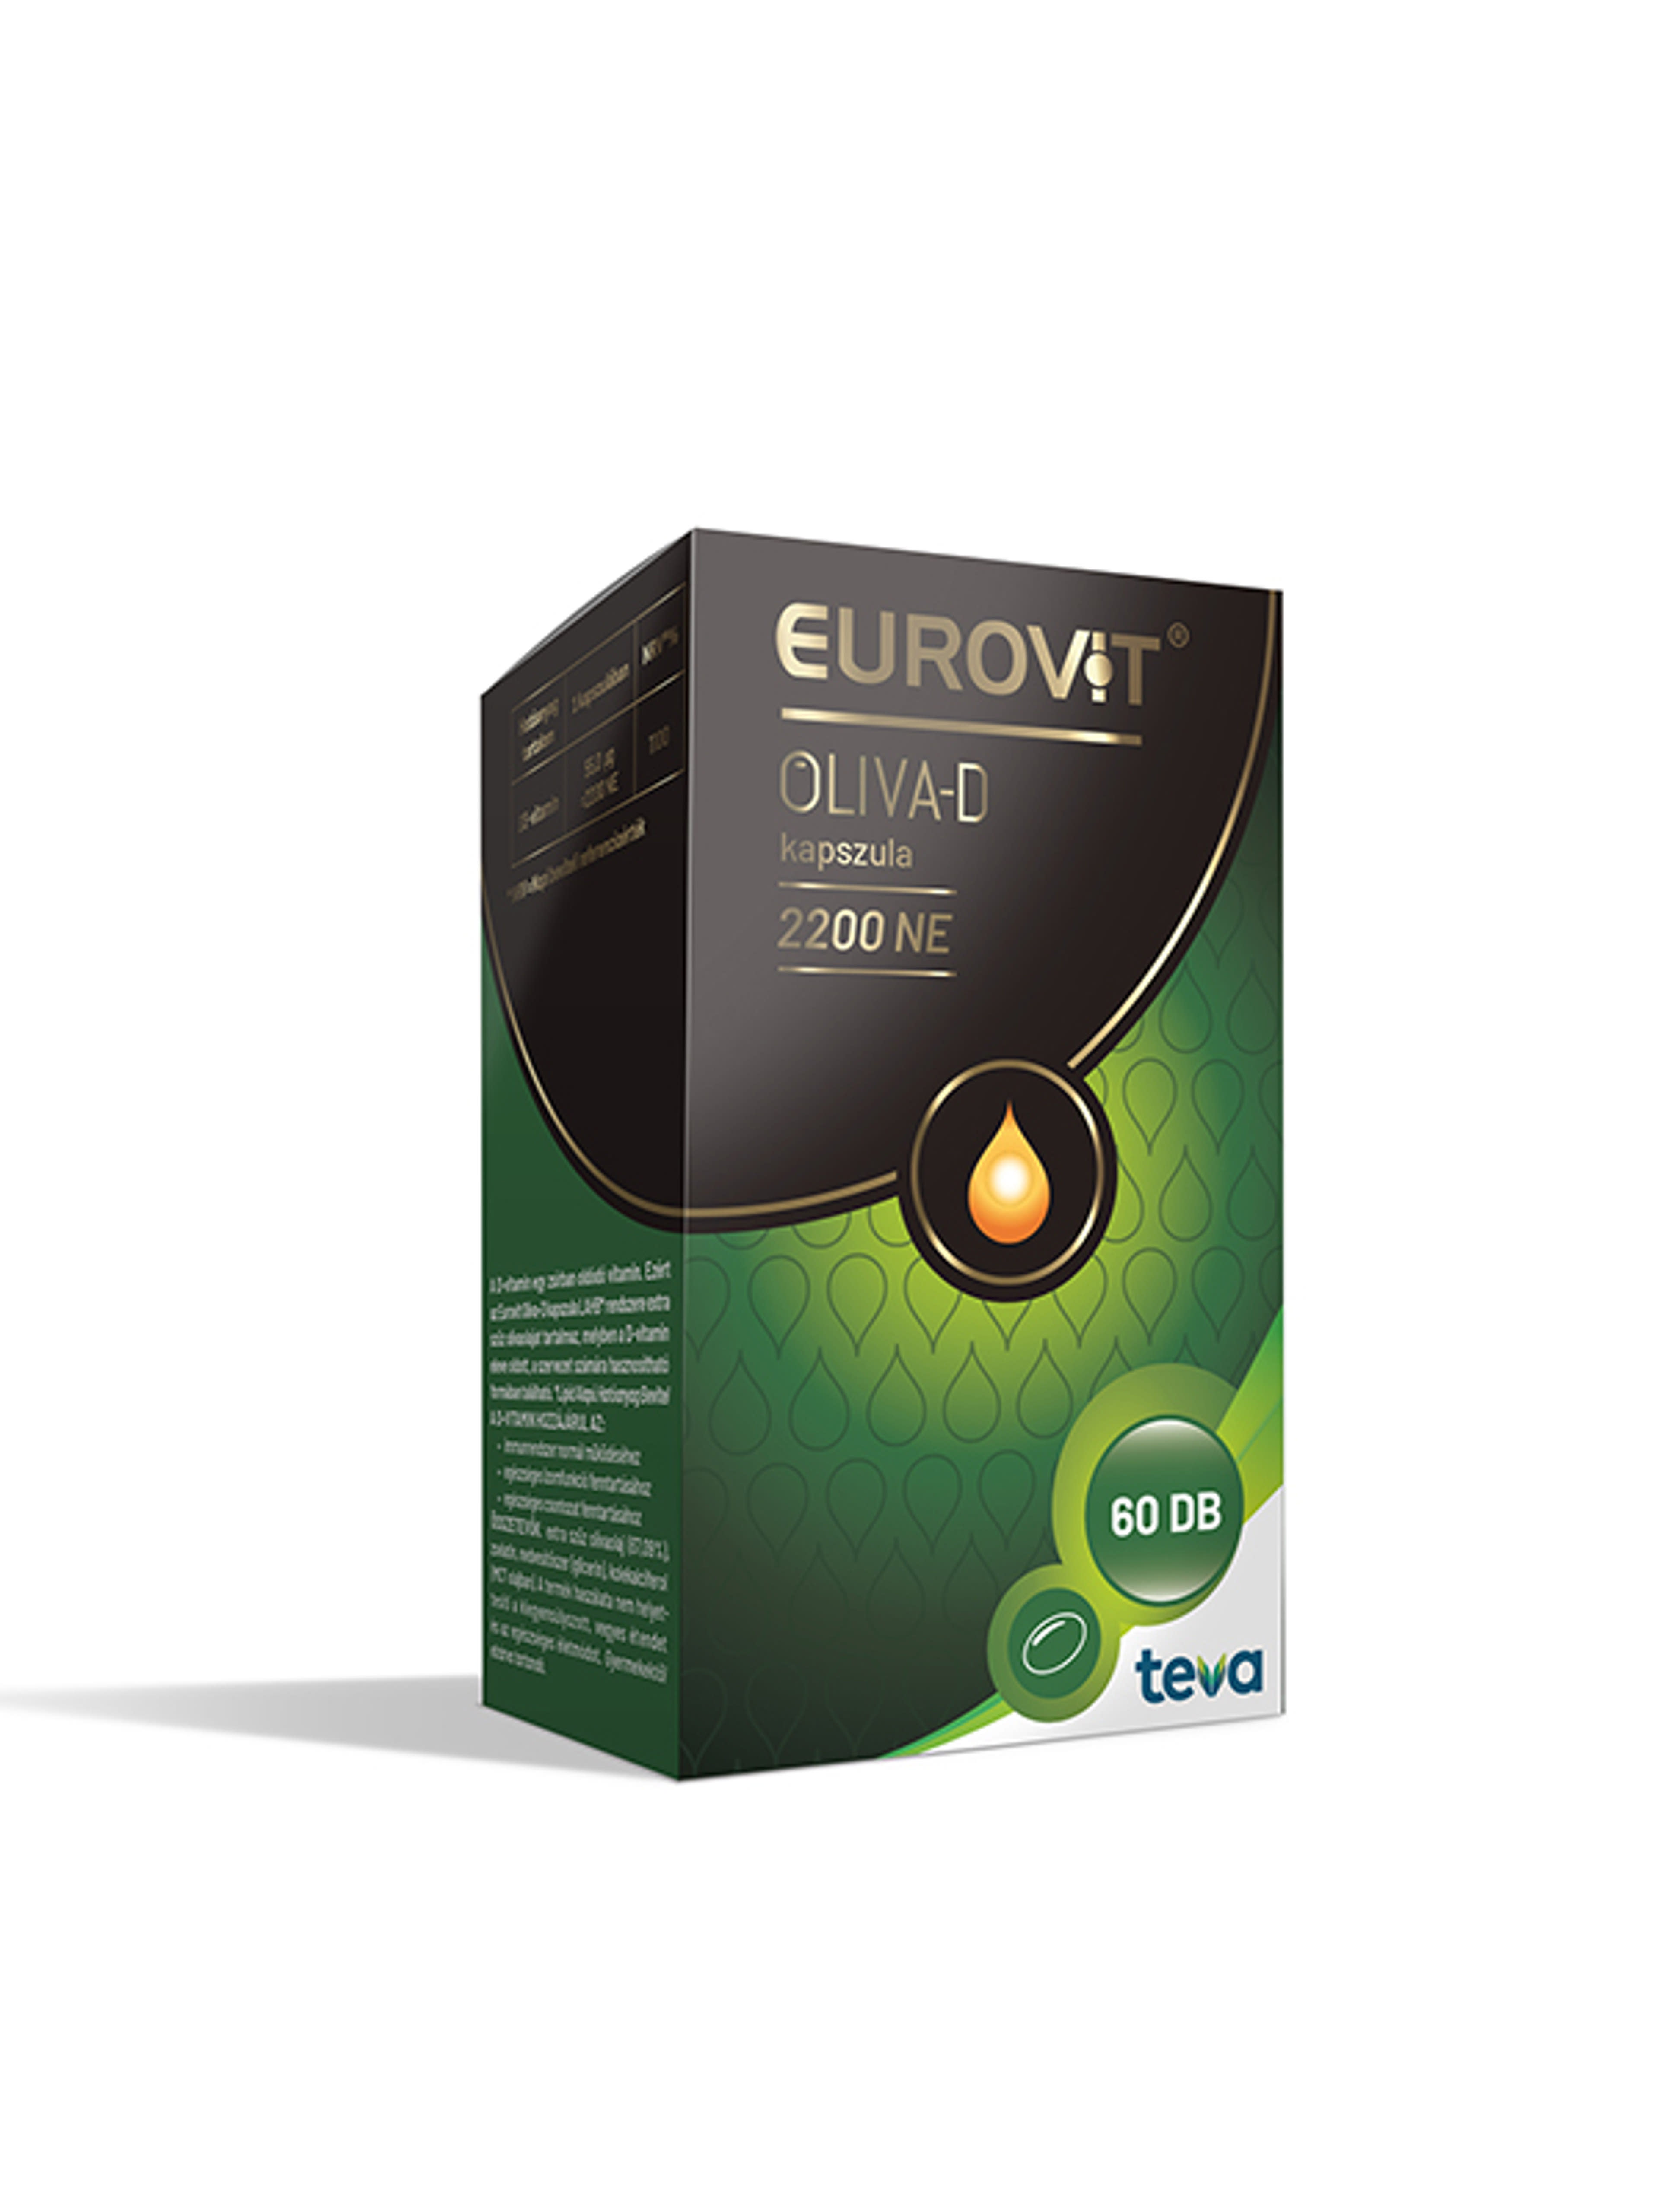 Eurovit oliva-d 2200Ne kapszula - 60 db-2